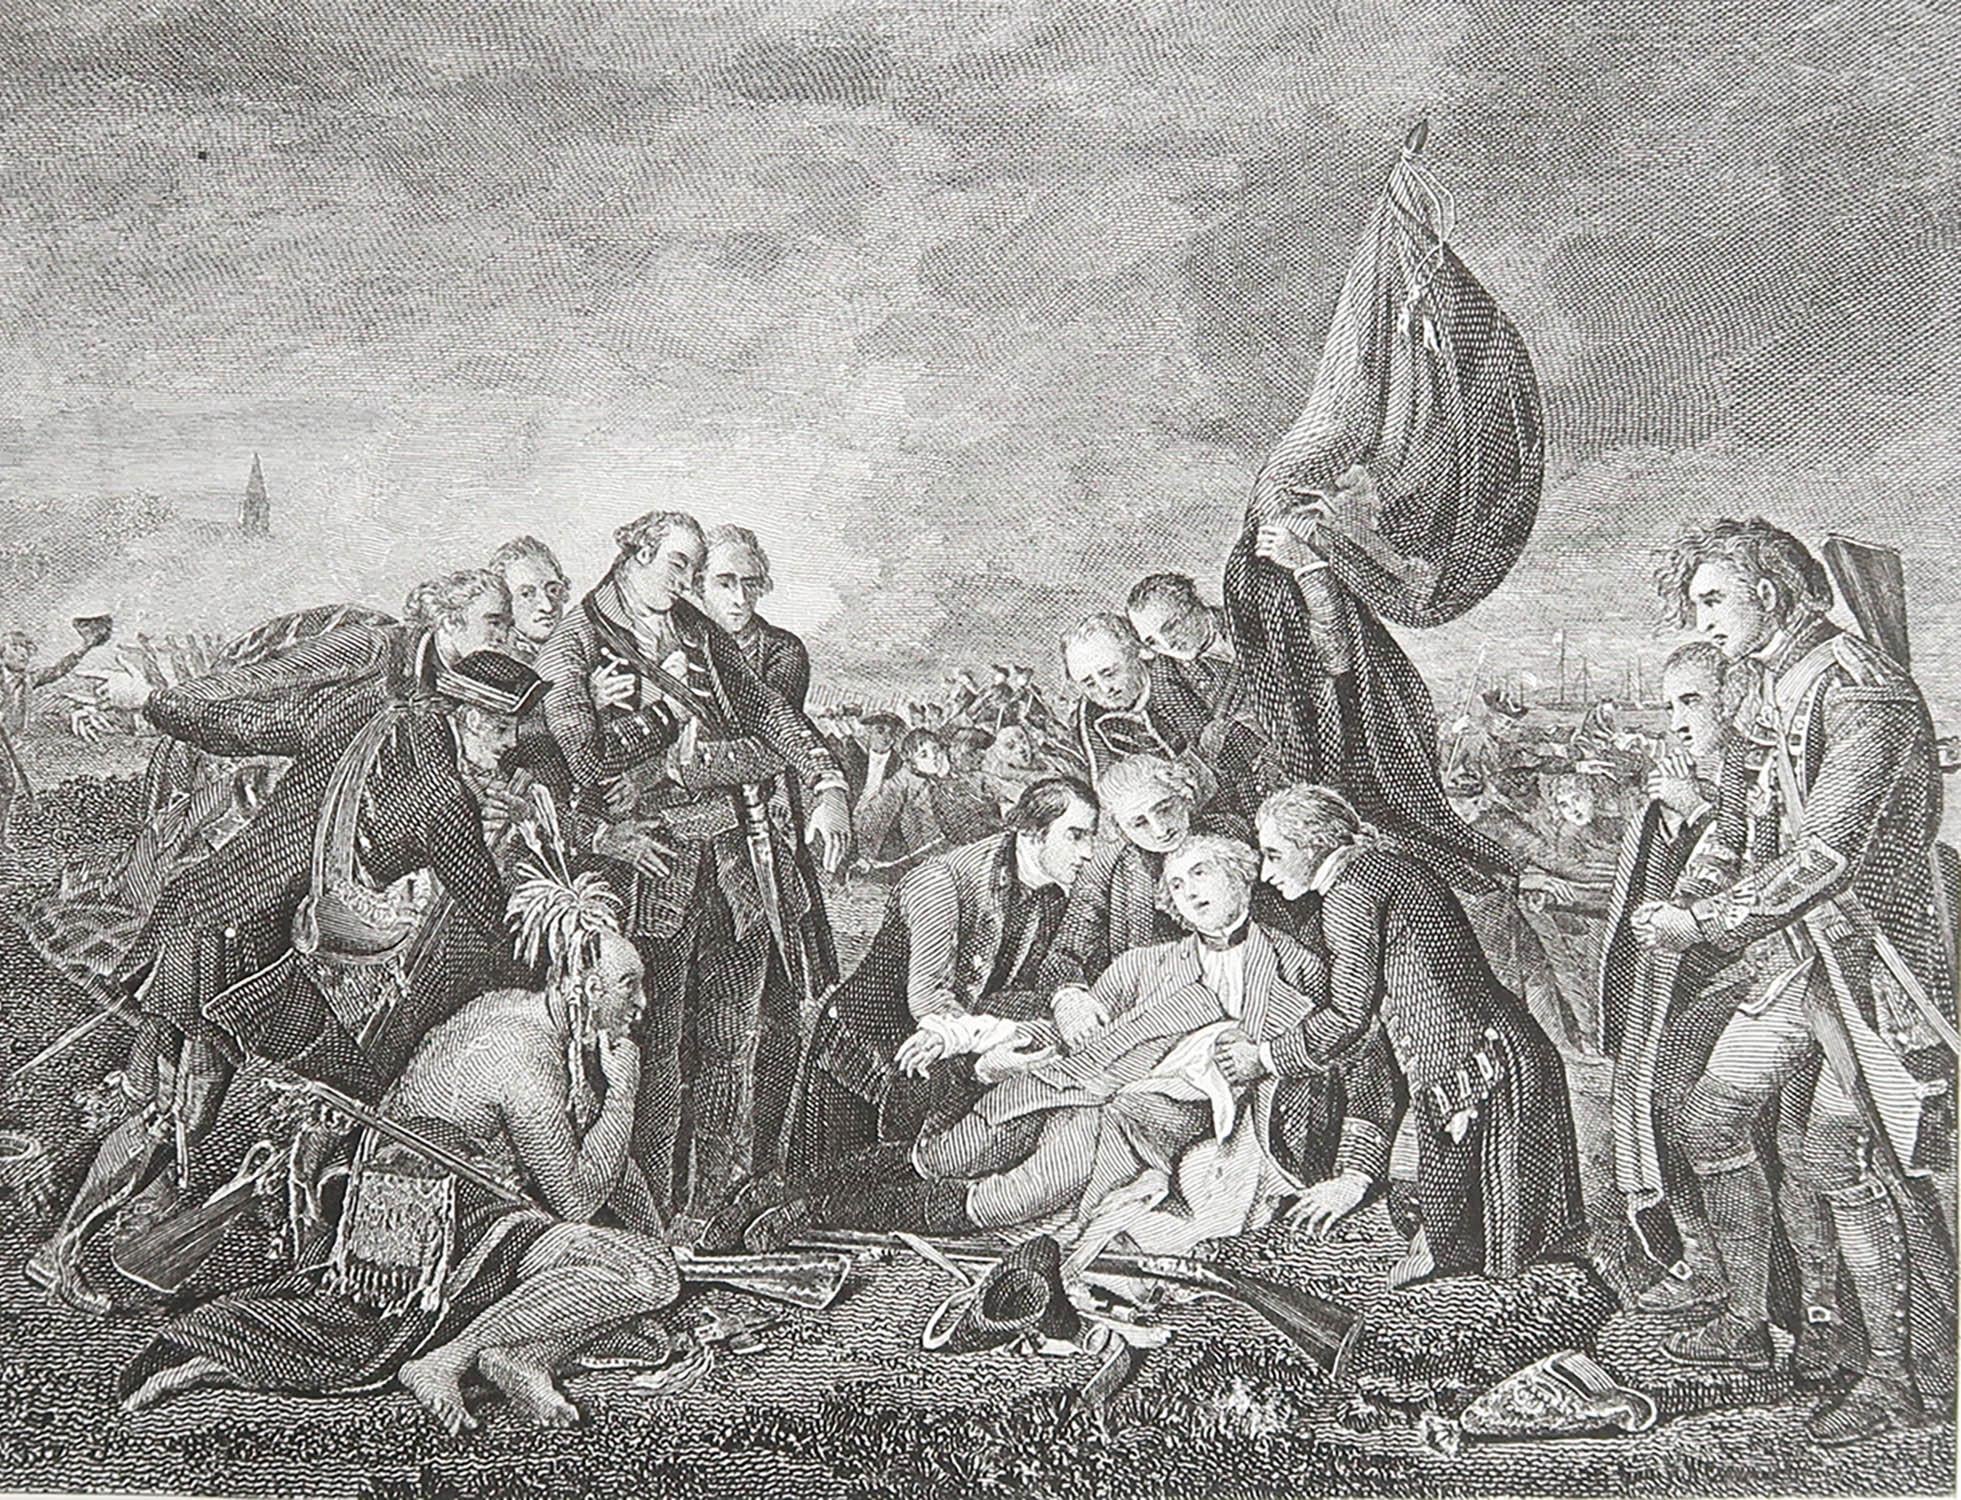 Merveilleuse image de La mort du général WOLFS lors de la bataille de Québec

Gravure sur acier fin 

Publié par Kelly vers 1850

Non encadré.

